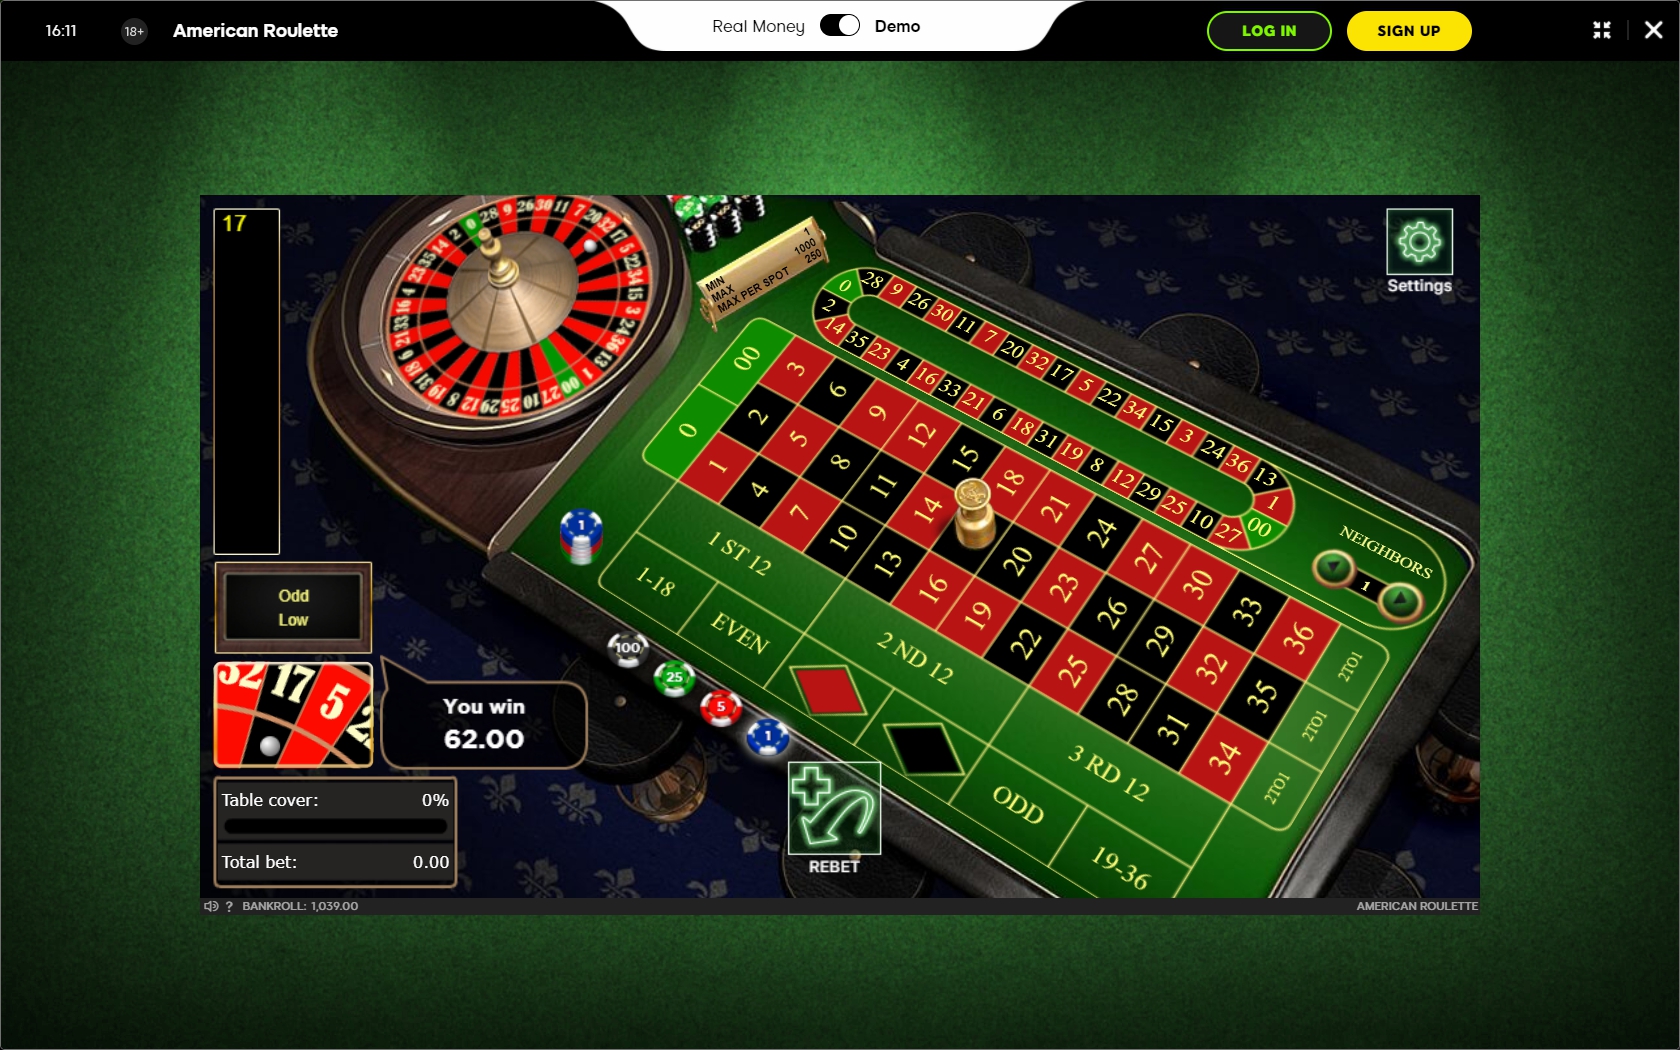 888.com Casino Casino Games